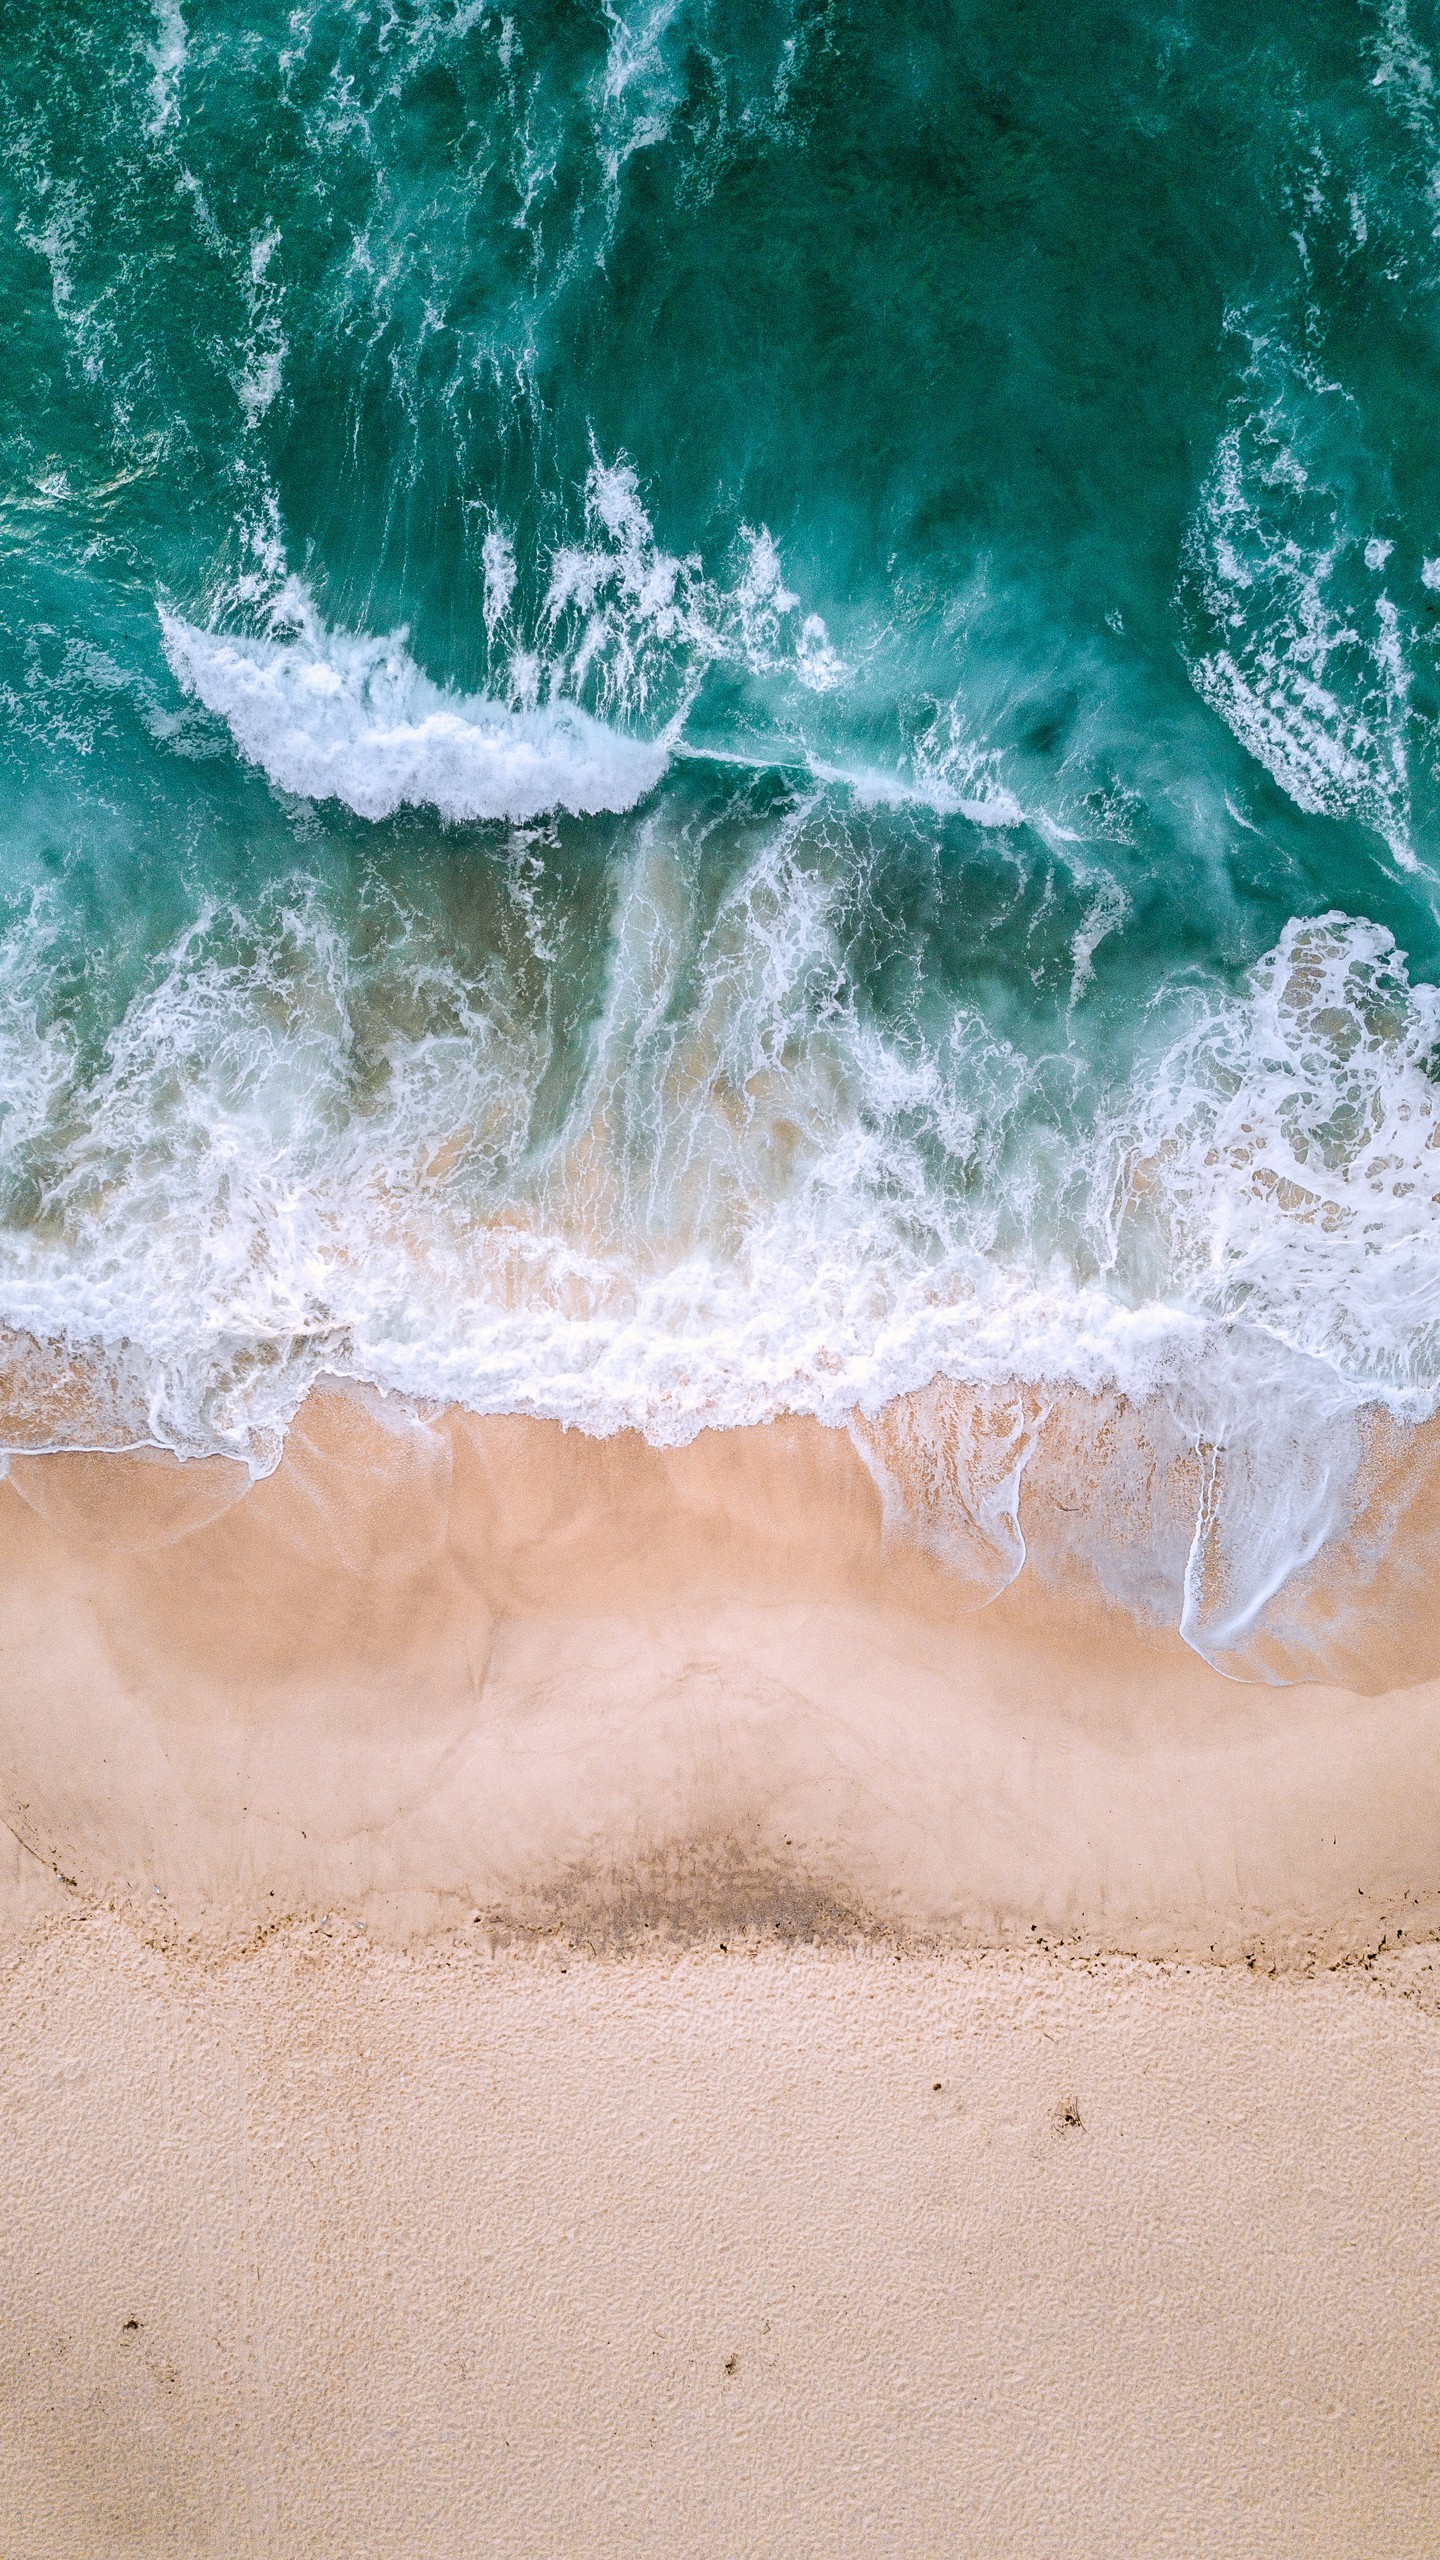 Обои на телефон океан, вид сверху, прибой, волны, пена, песок - скачать  бесплатно в высоком качестве из категории Природа